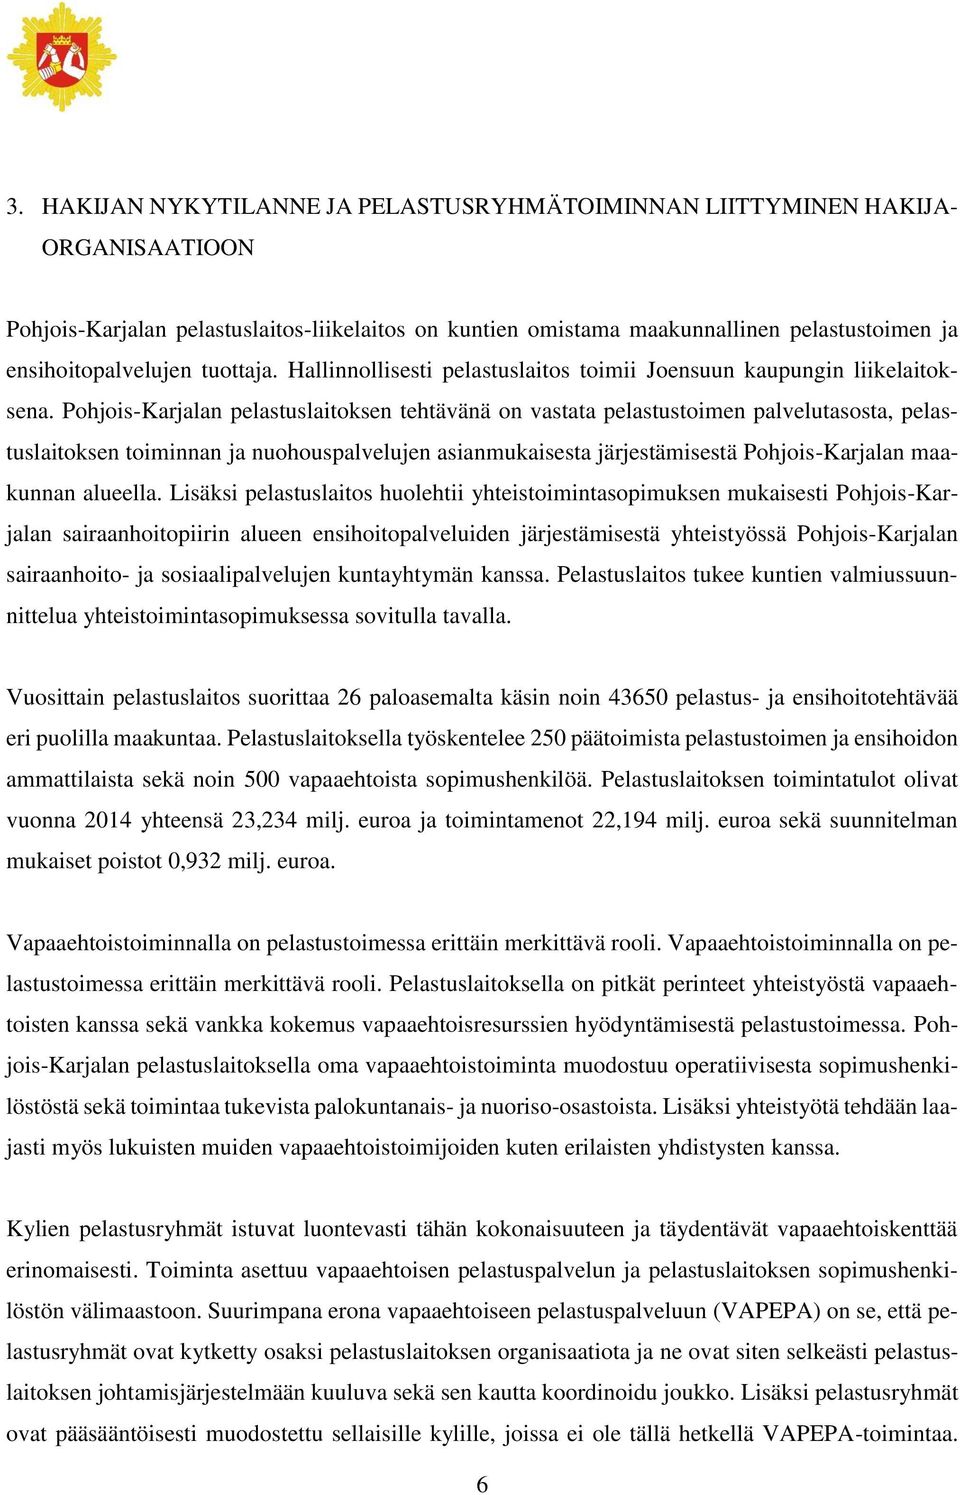 Pohjois-Karjalan pelastuslaitoksen tehtävänä on vastata pelastustoimen palvelutasosta, pelastuslaitoksen toiminnan ja nuohouspalvelujen asianmukaisesta järjestämisestä Pohjois-Karjalan maakunnan